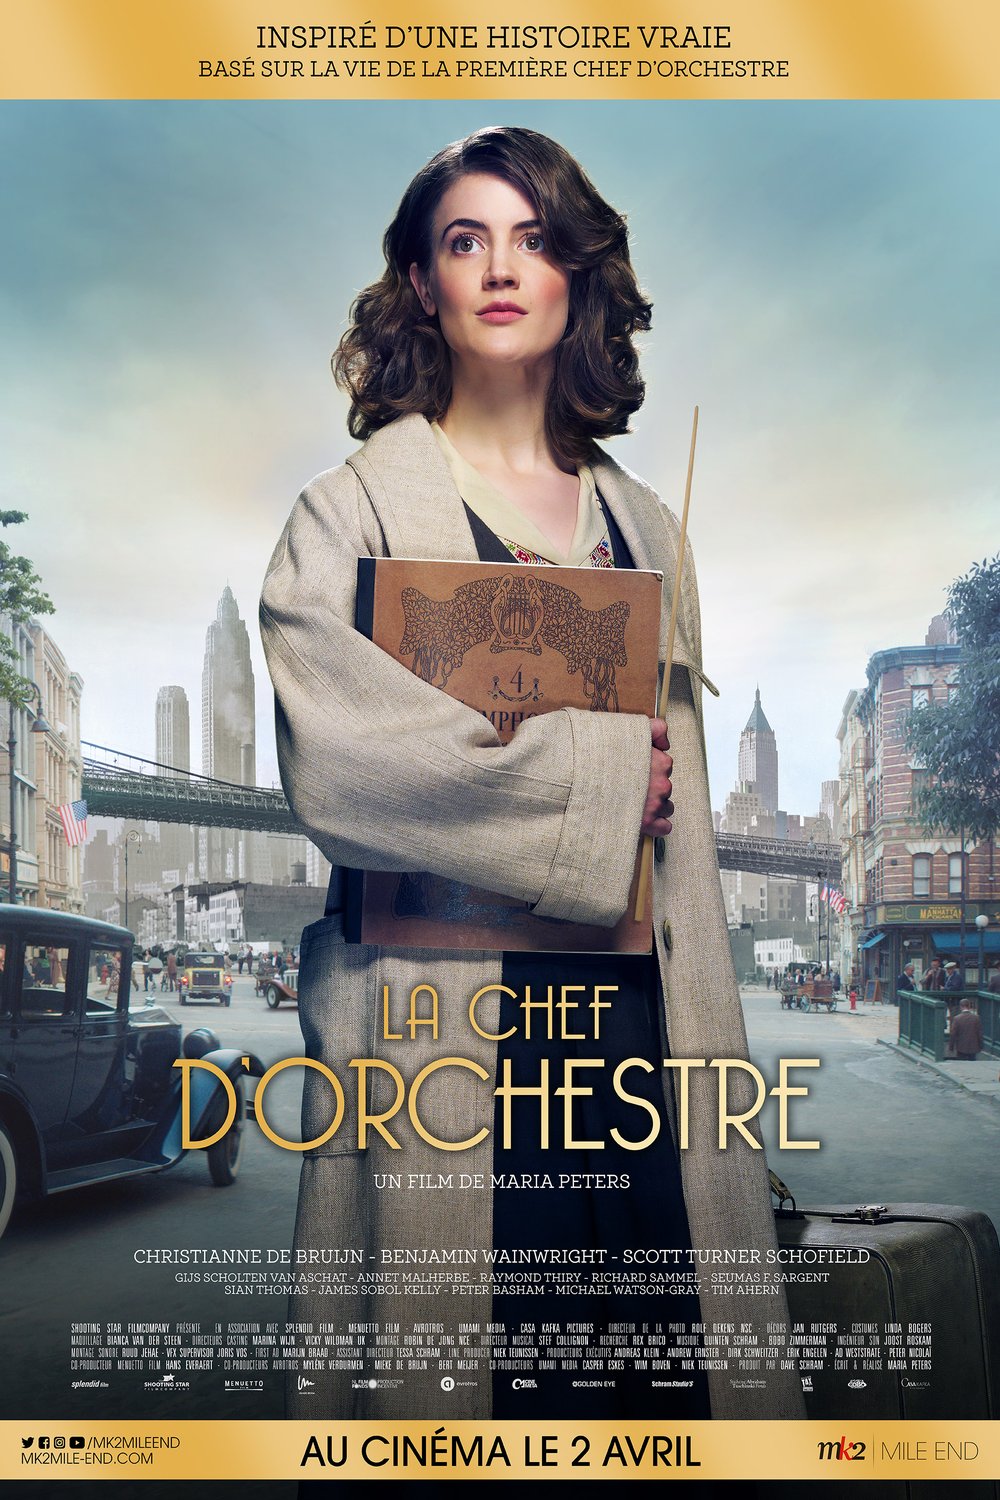 Poster of the movie La chef d'orchestre